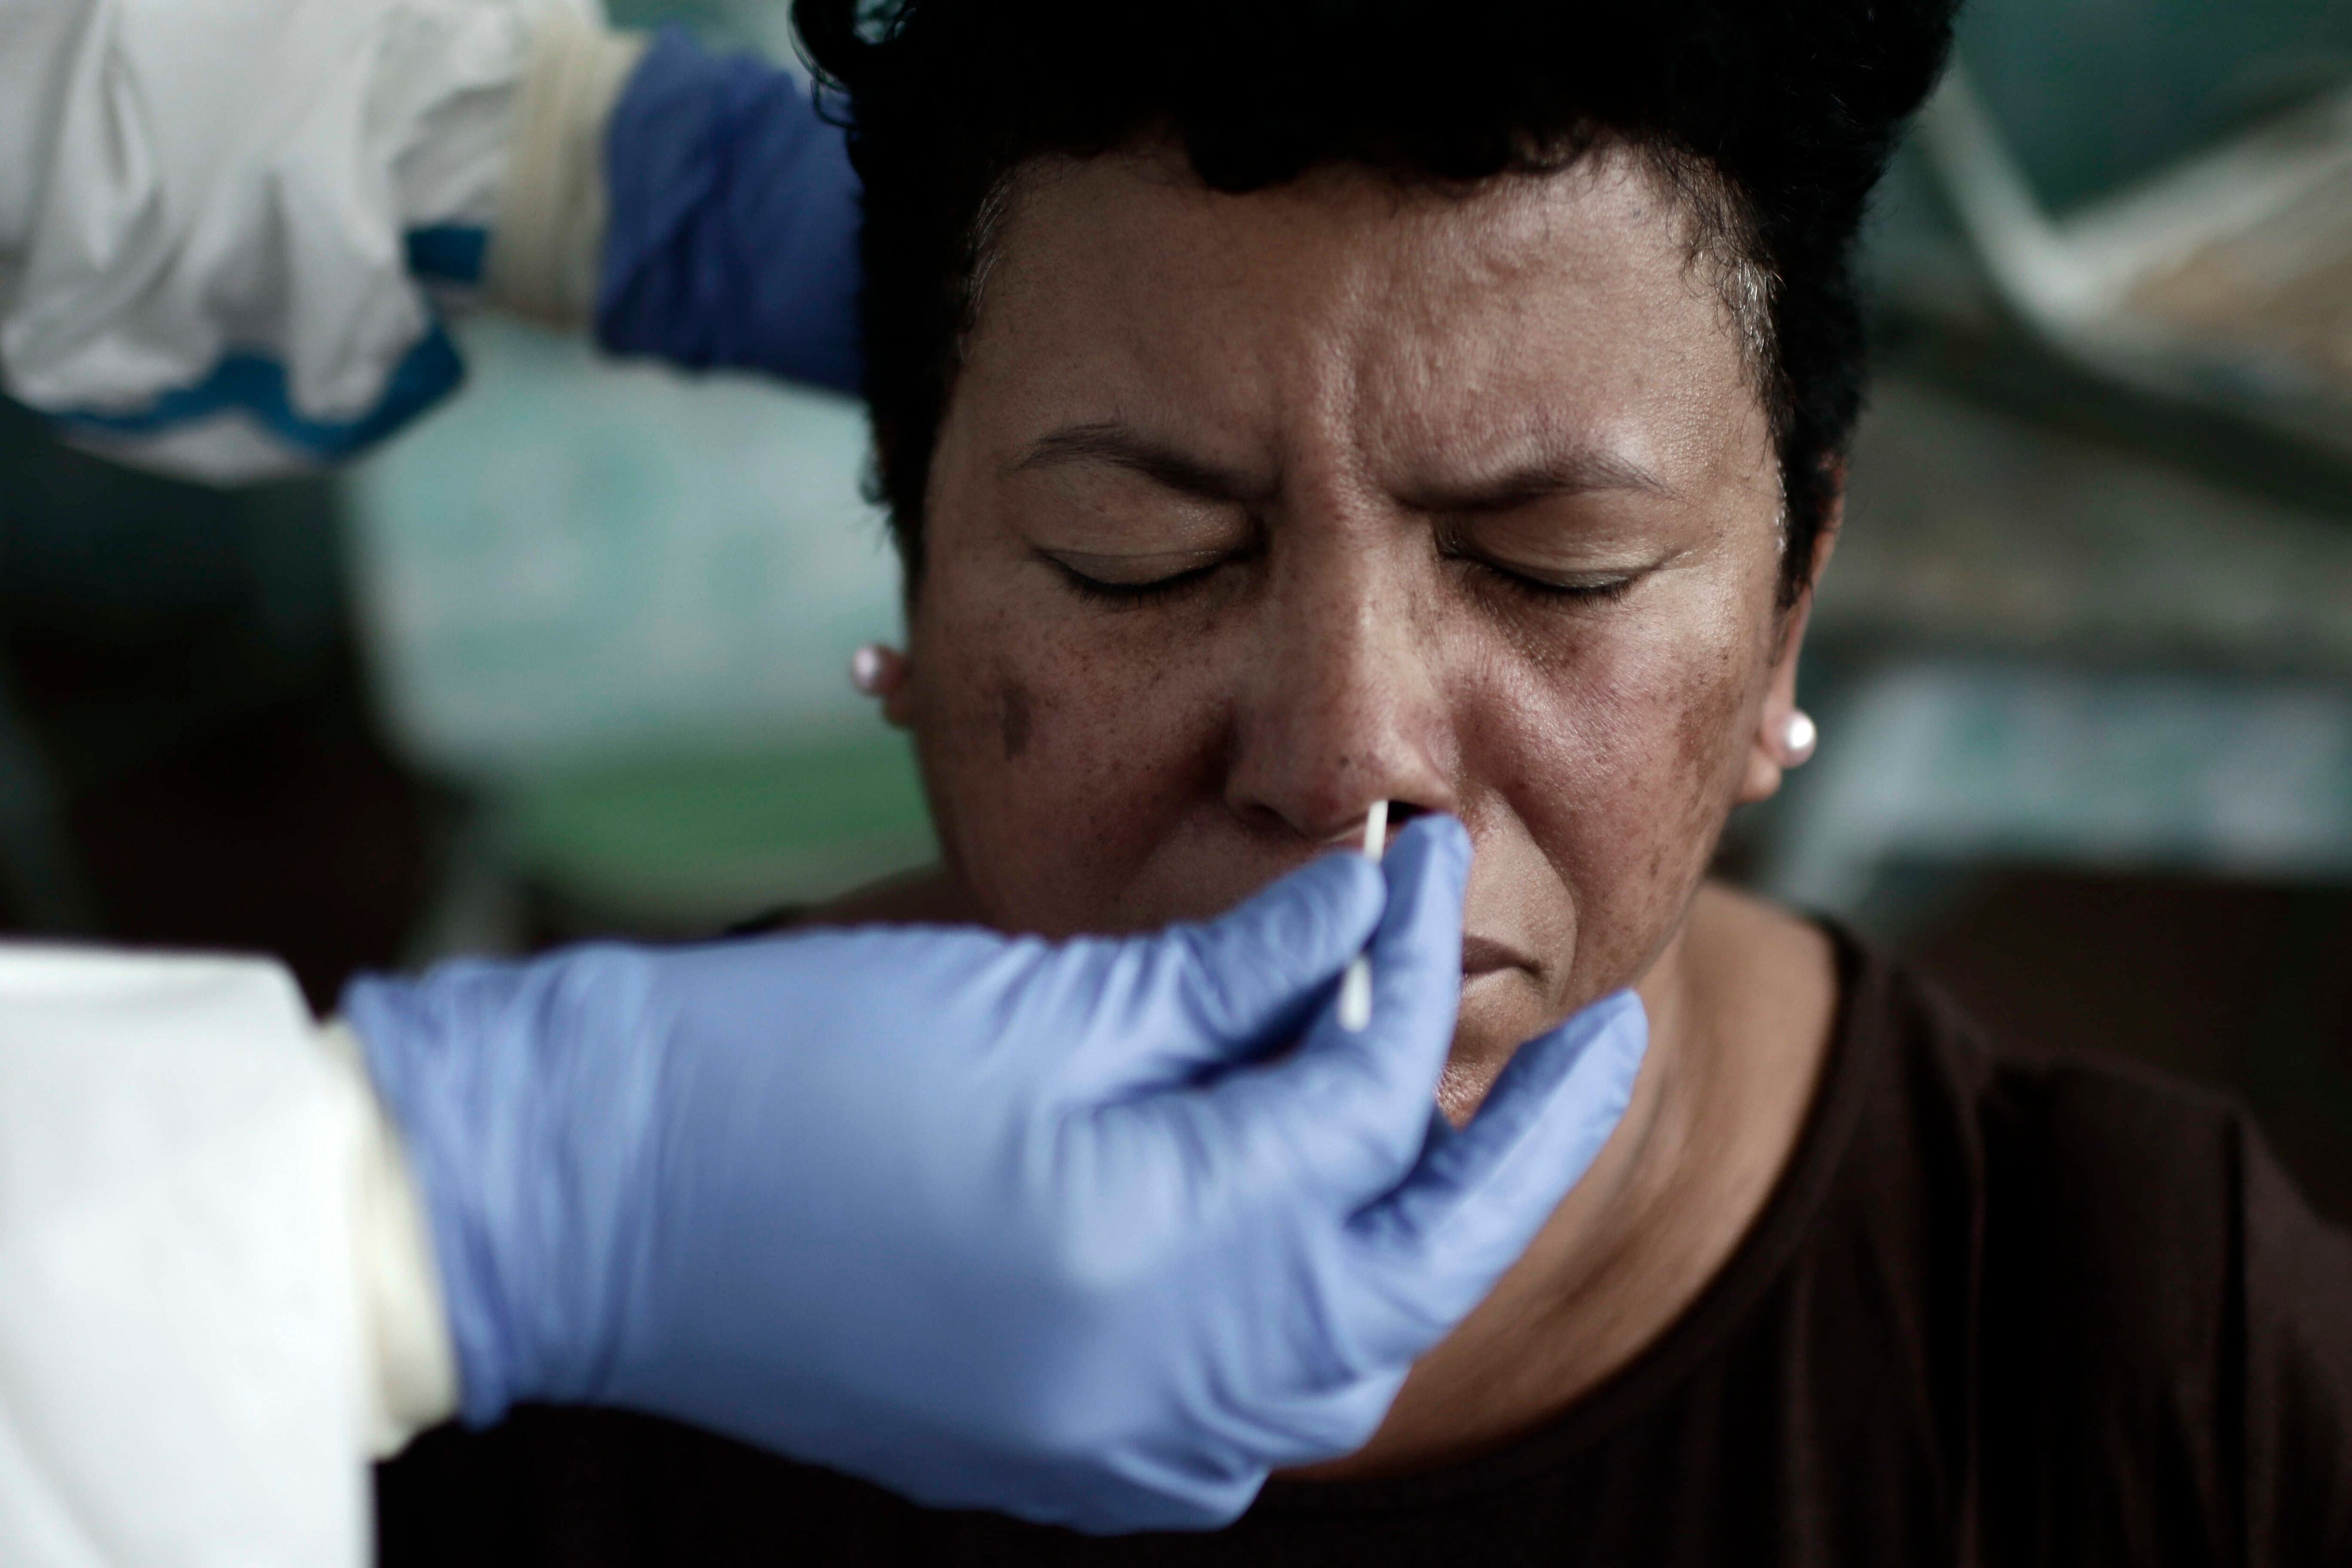 Un profesional sanitario realiza una prueba de covid-19, en una fotografía de archivo. EFE/Jeffrey Arguedas